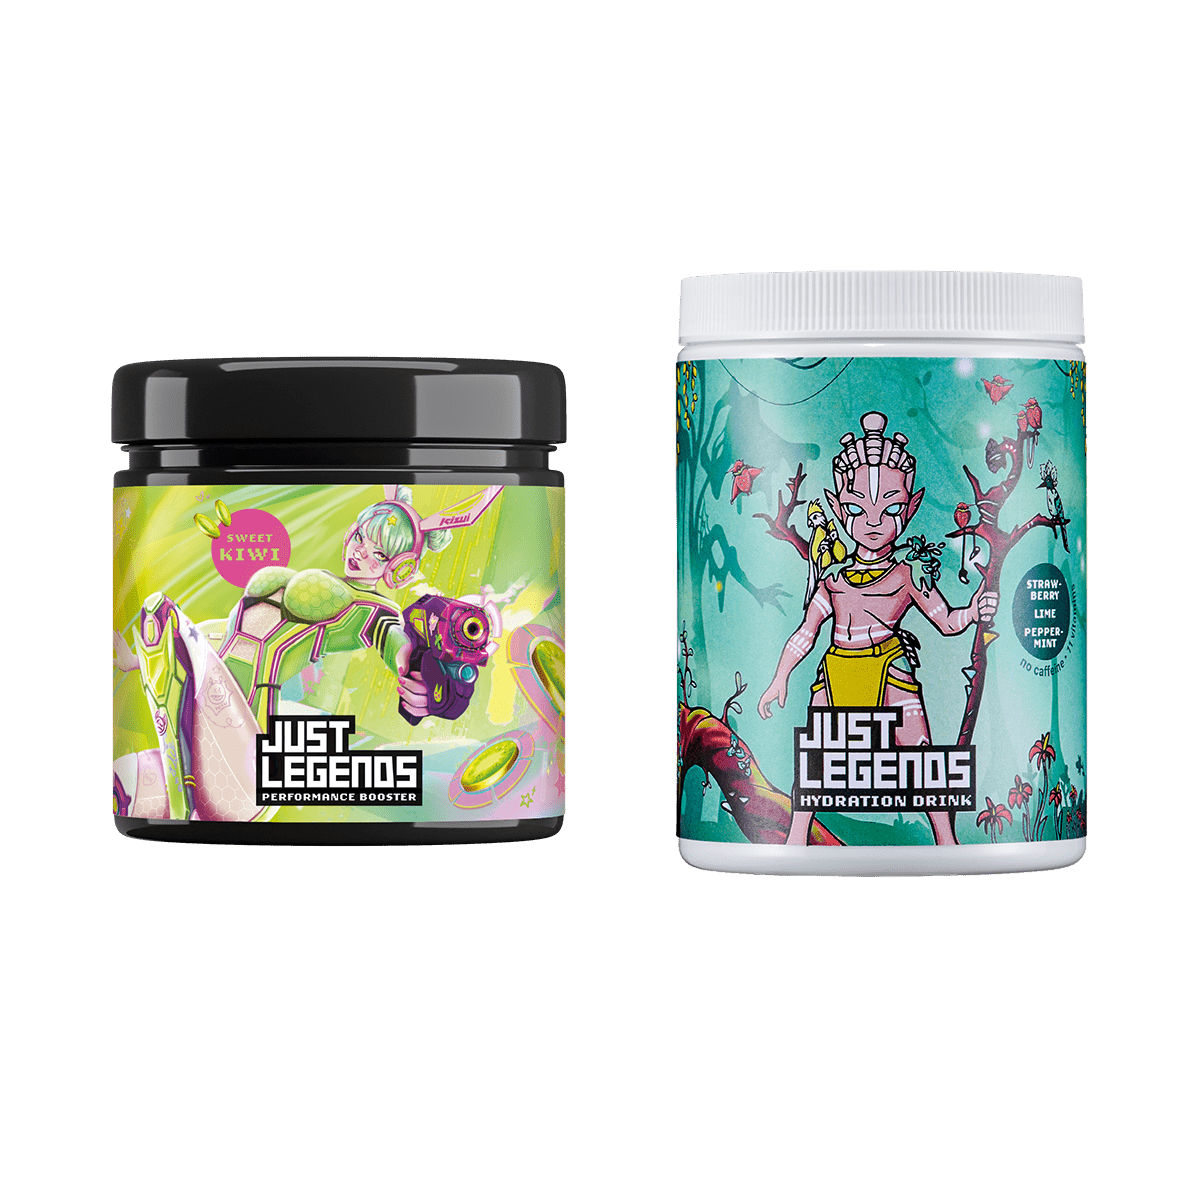 Just Legends Booster & Hydration Pack | Funktionaler, veganer Multipack auf Pulverbasis ohne Zucker, mit wenig Kalorien, vielen Vitaminen und natürlichen Aromen.